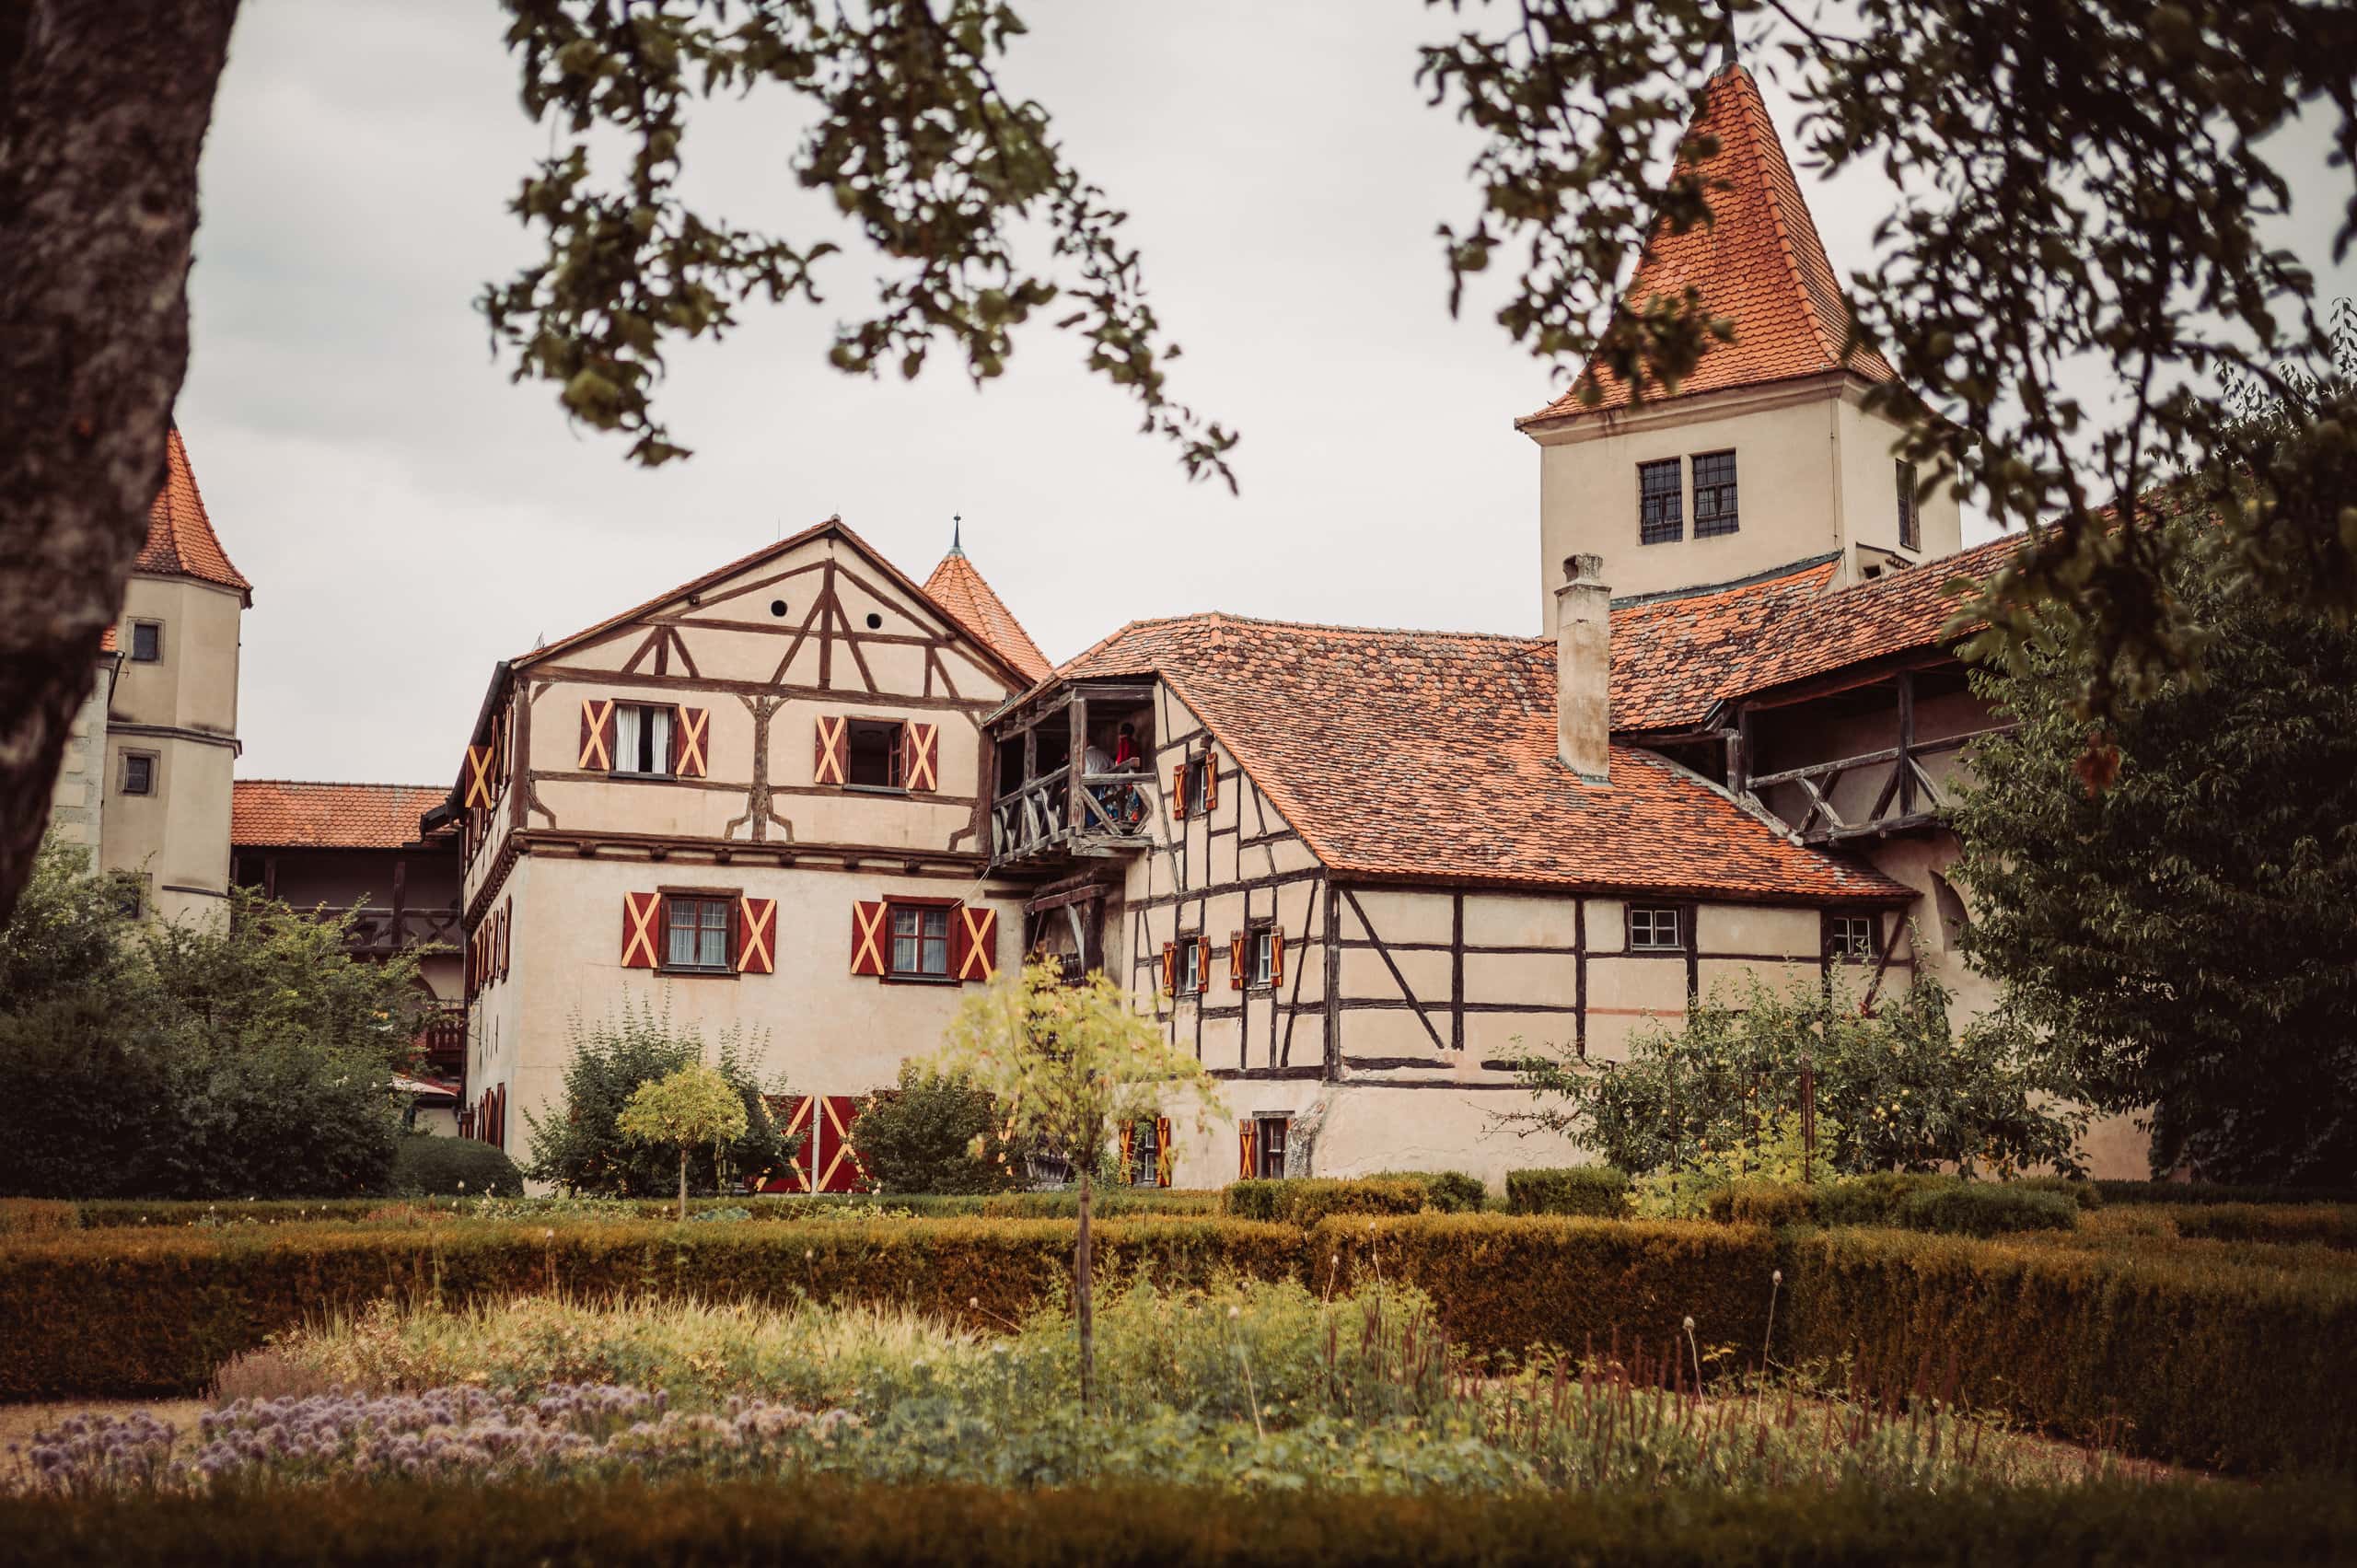 Hochzeitslocation Burg Harburg in der Nähe von Donauwörth